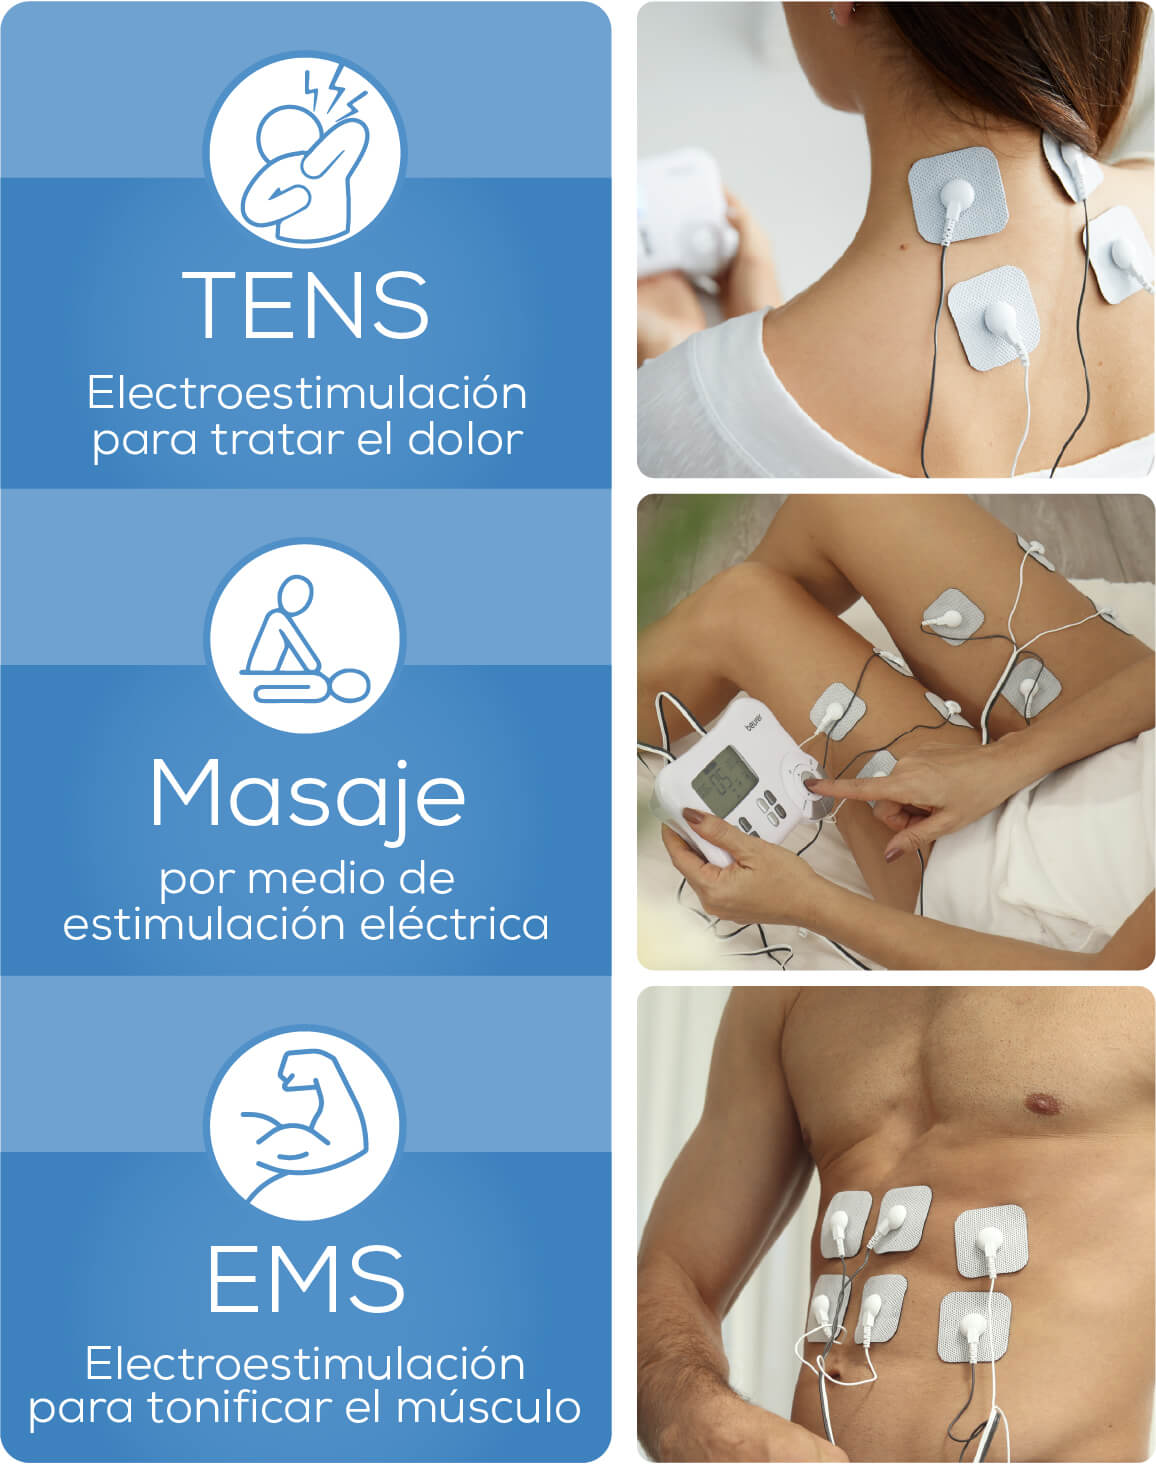 Material de electroterapia, Tens, Ems - Fisiomarket